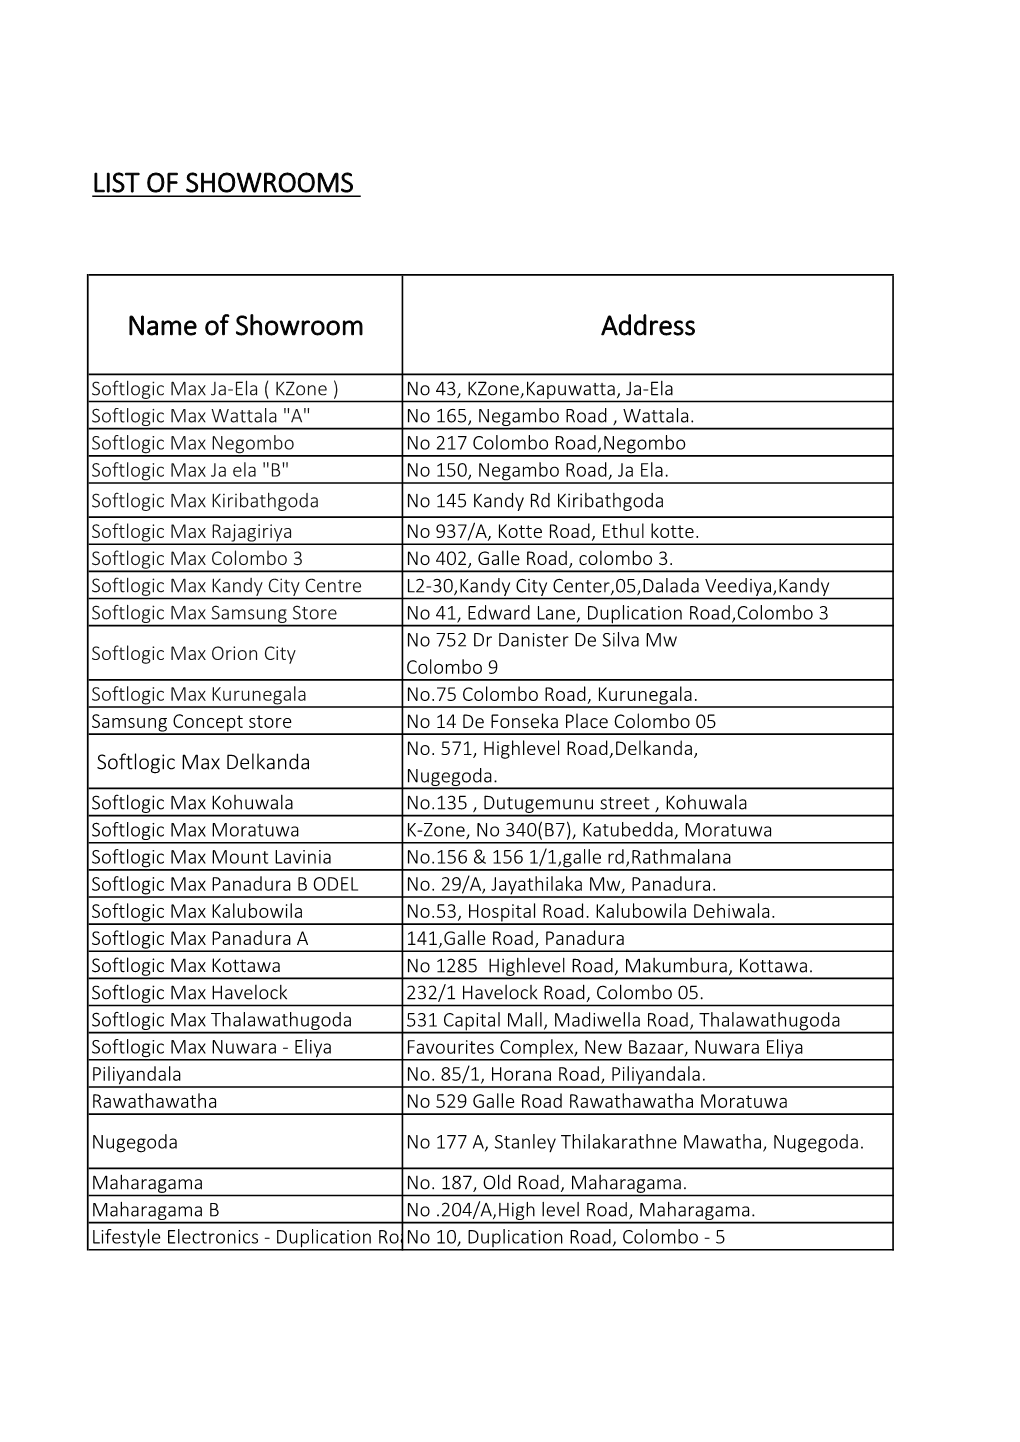 List of Showrooms